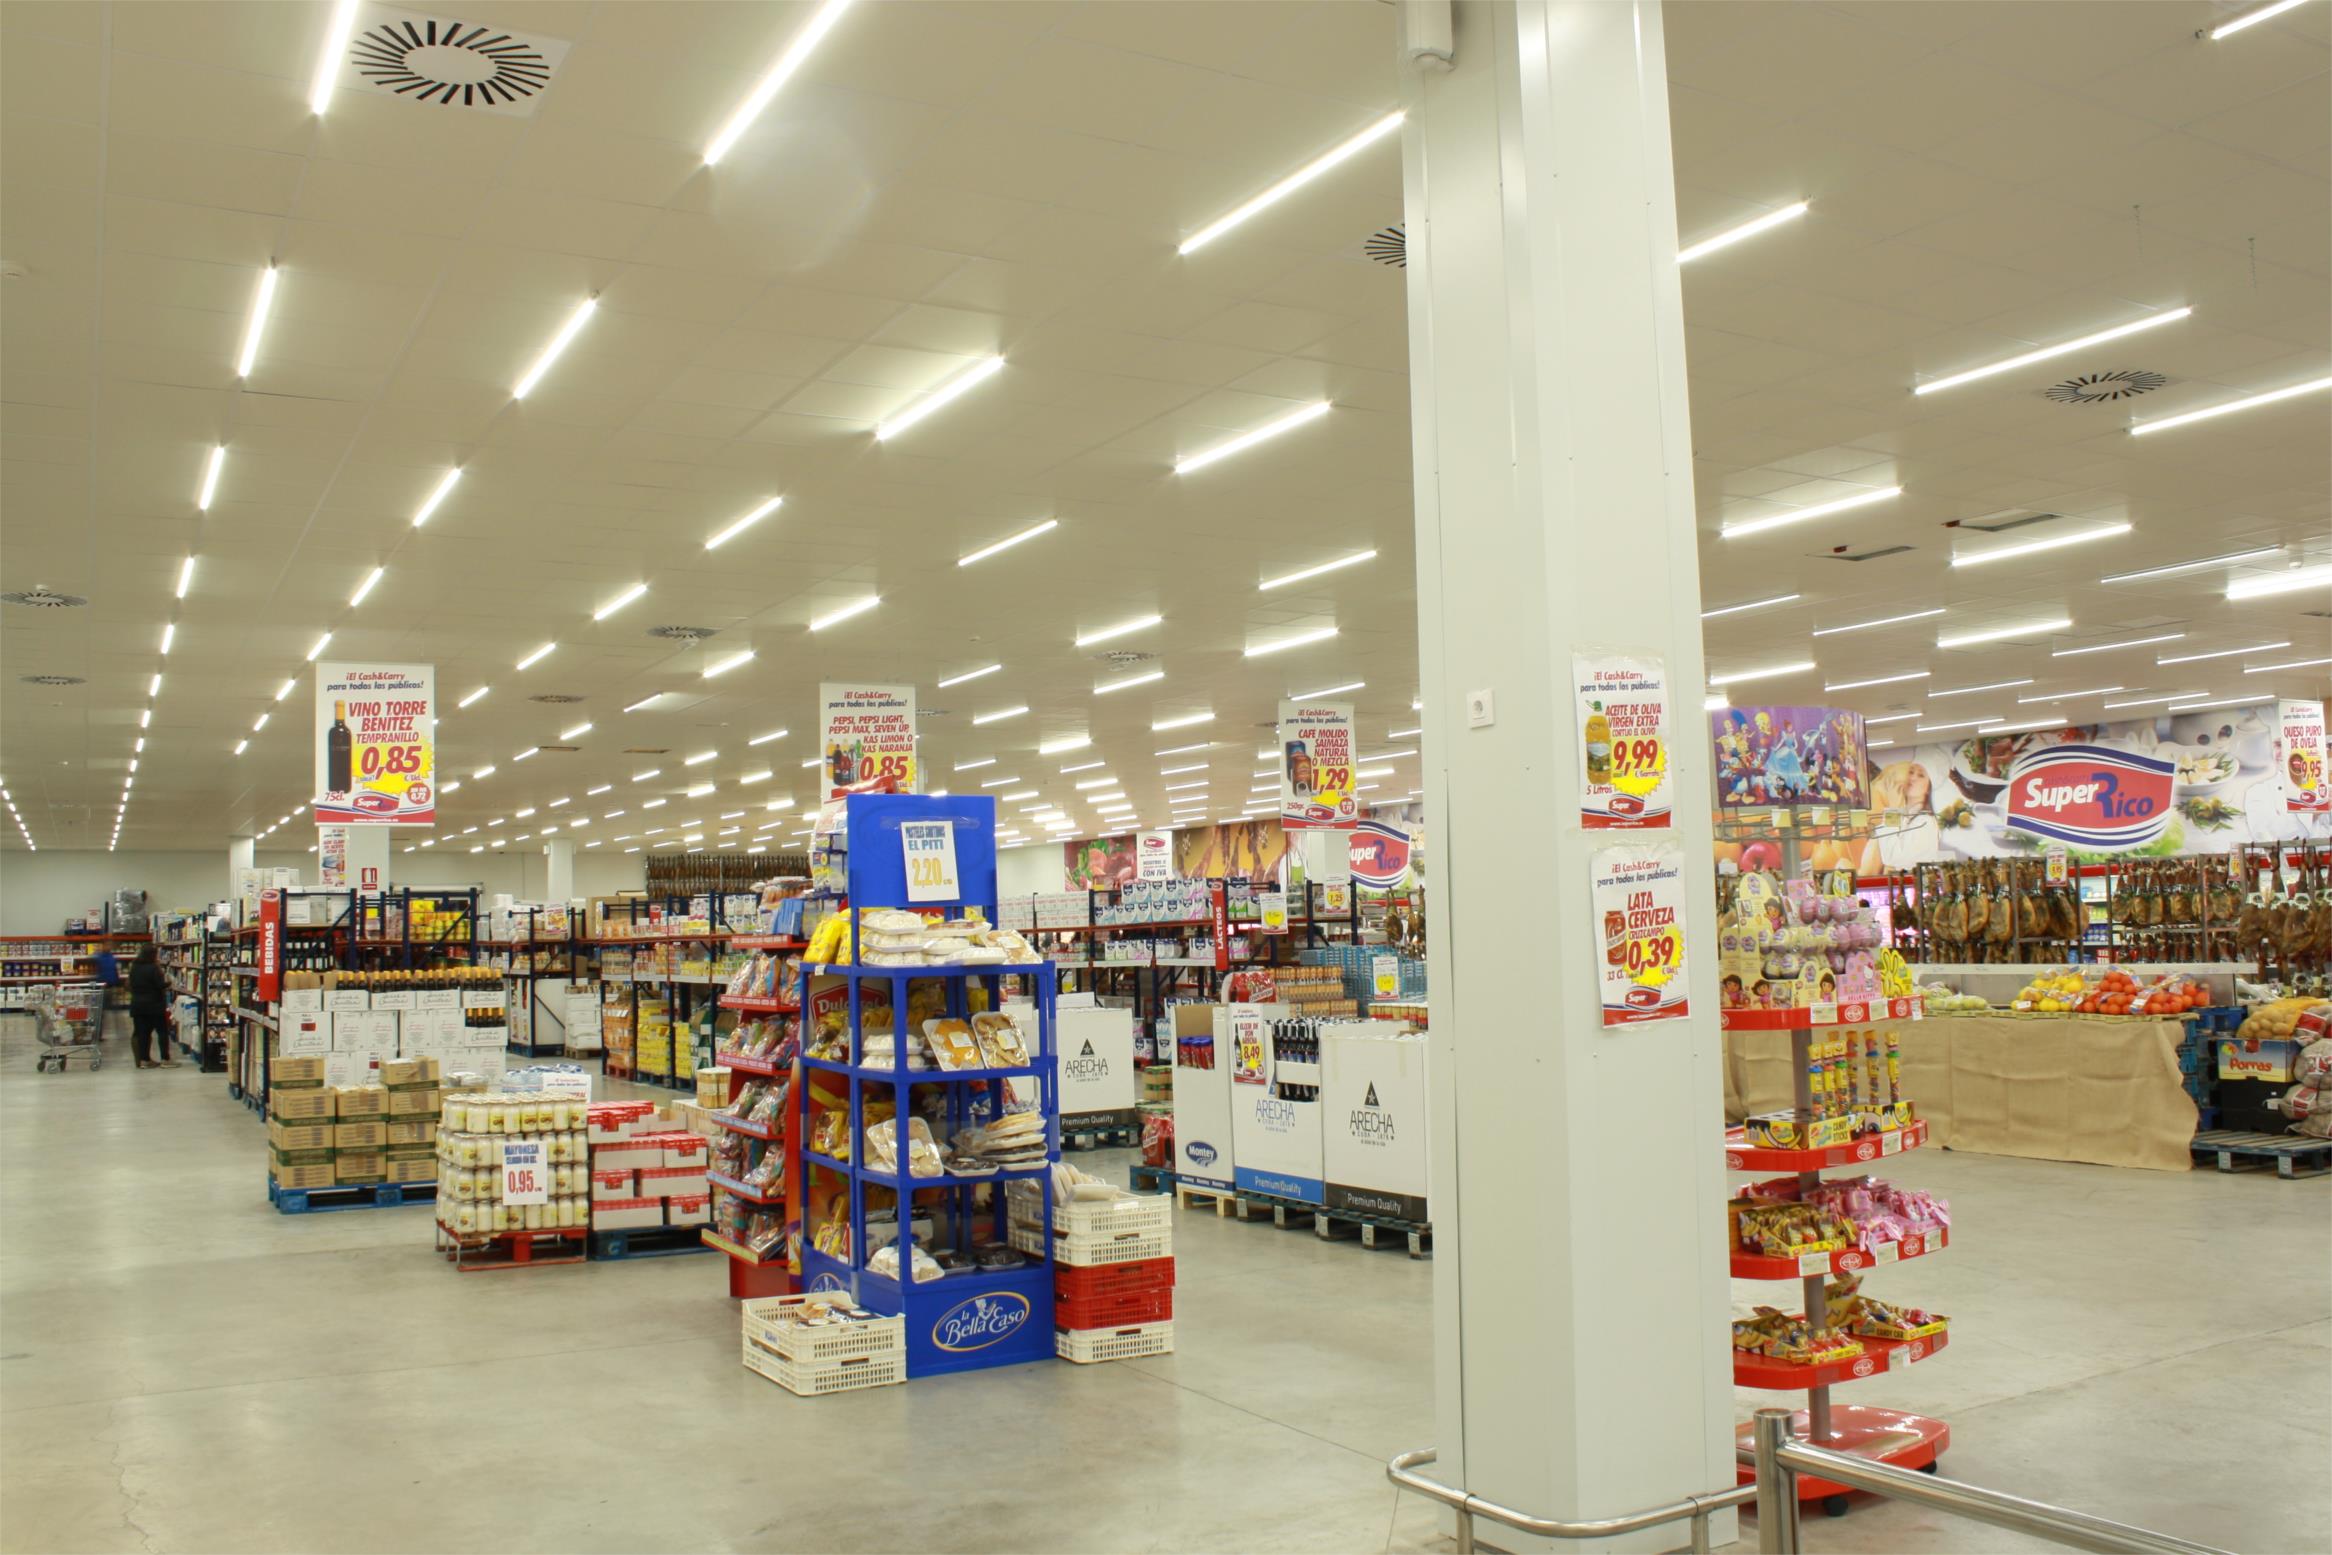 Đèn LED Tuýp Philips Ledtube DE 600mm 9W T8 Ecolink chiếu sáng không gian siêu thị